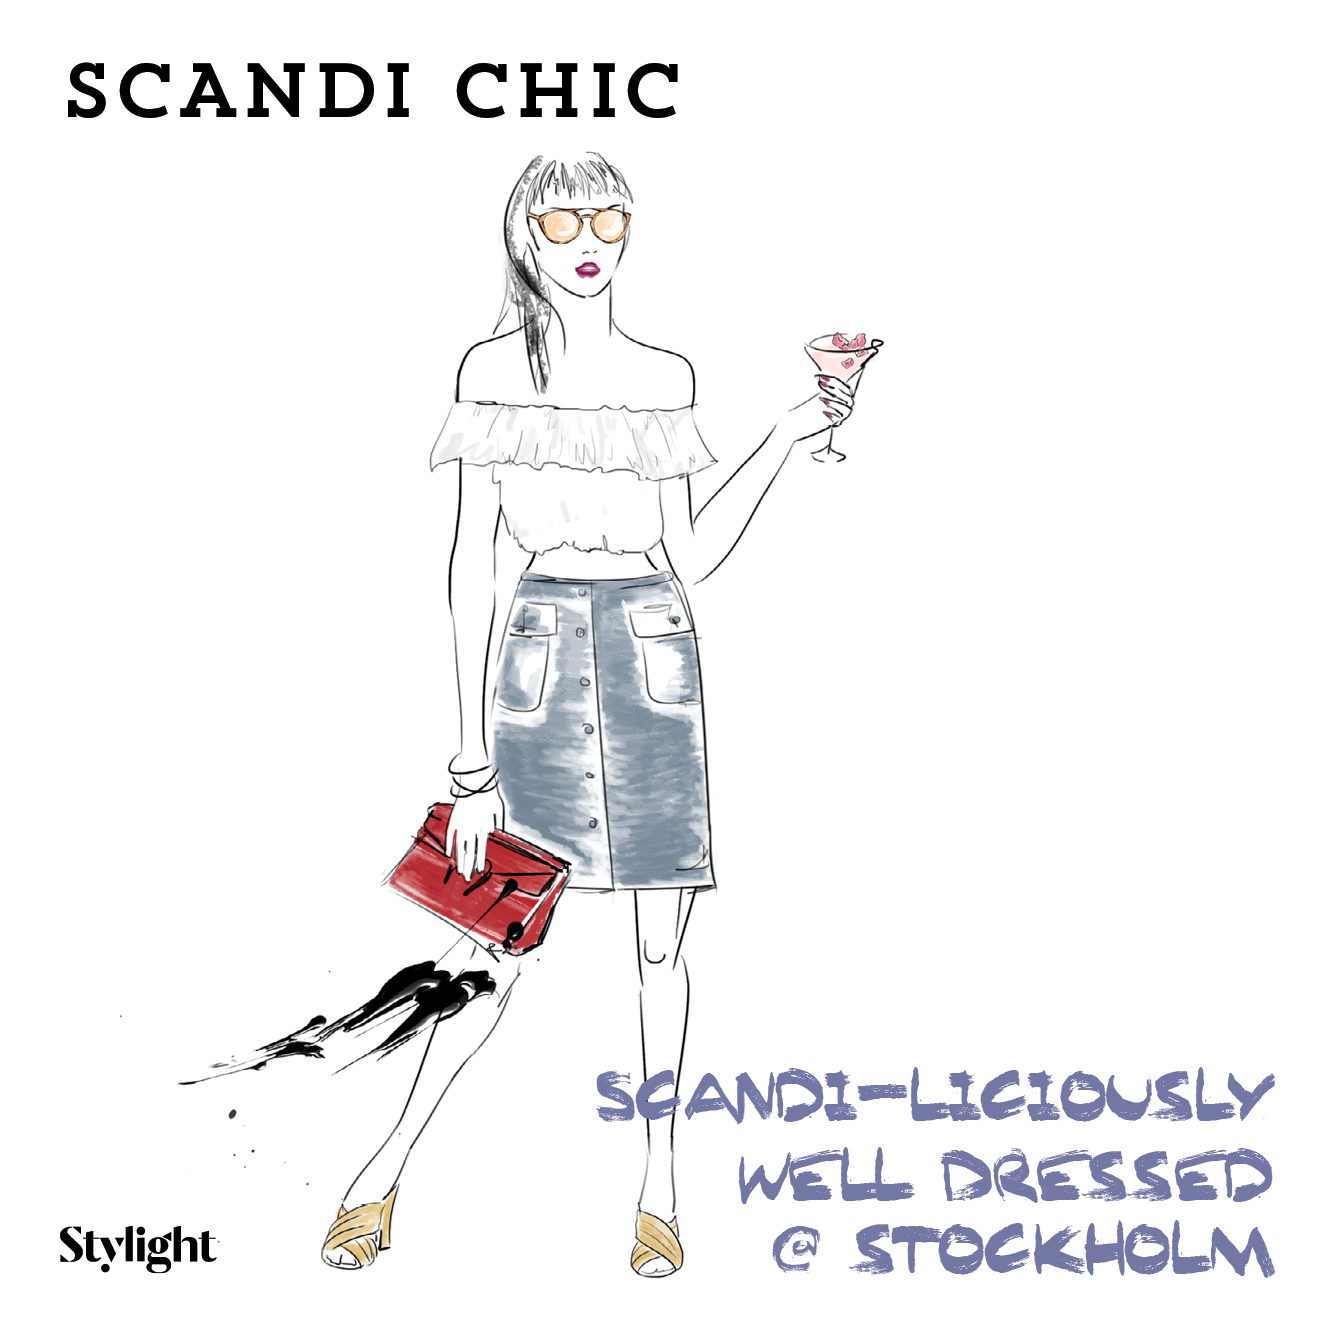 Stockholm fashion Scandi chic Stylight